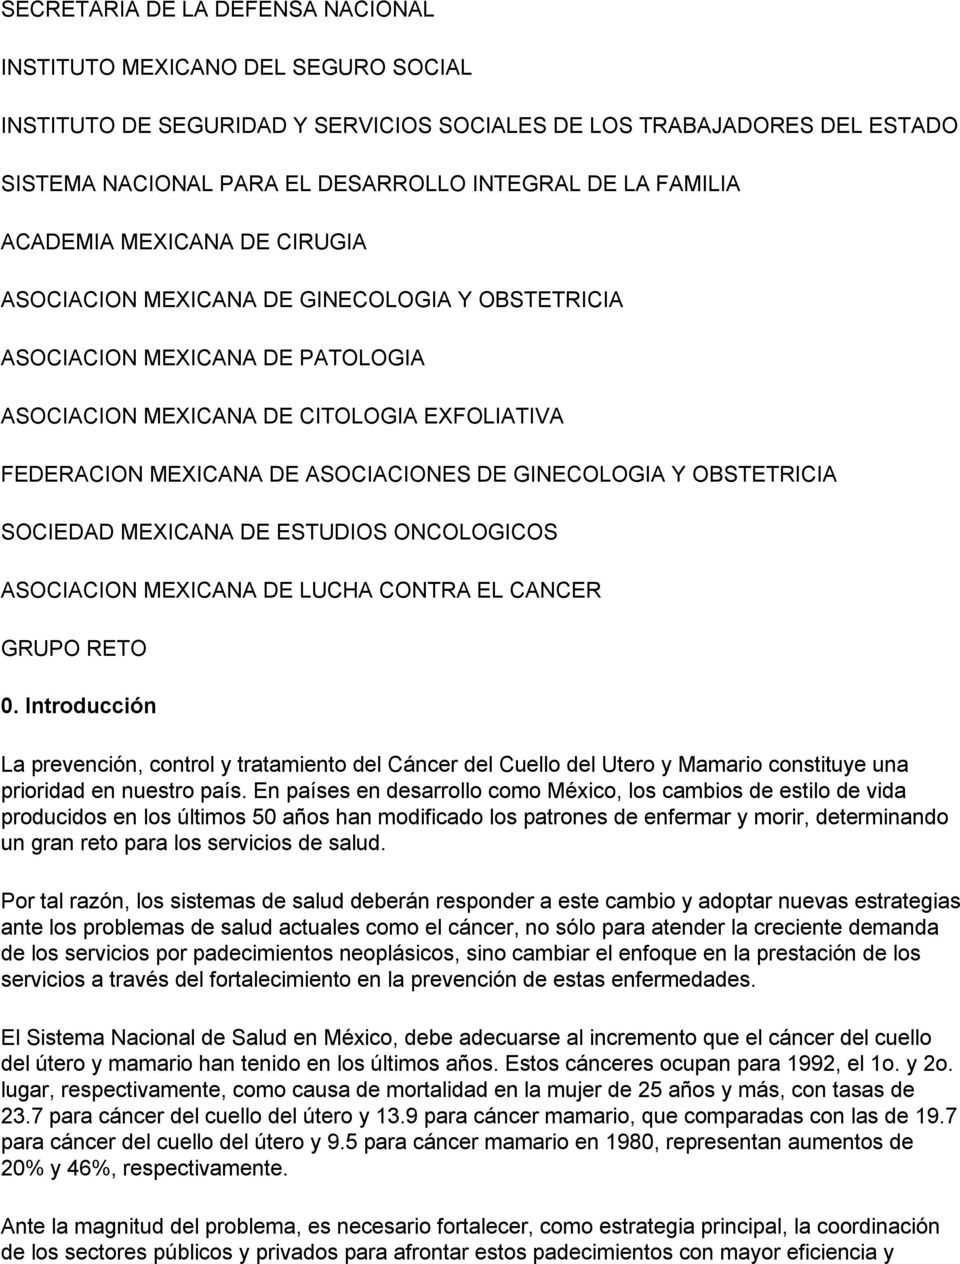 DE GINECOLOGIA Y OBSTETRICIA SOCIEDAD MEXICANA DE ESTUDIOS ONCOLOGICOS ASOCIACION MEXICANA DE LUCHA CONTRA EL CANCER GRUPO RETO 0.